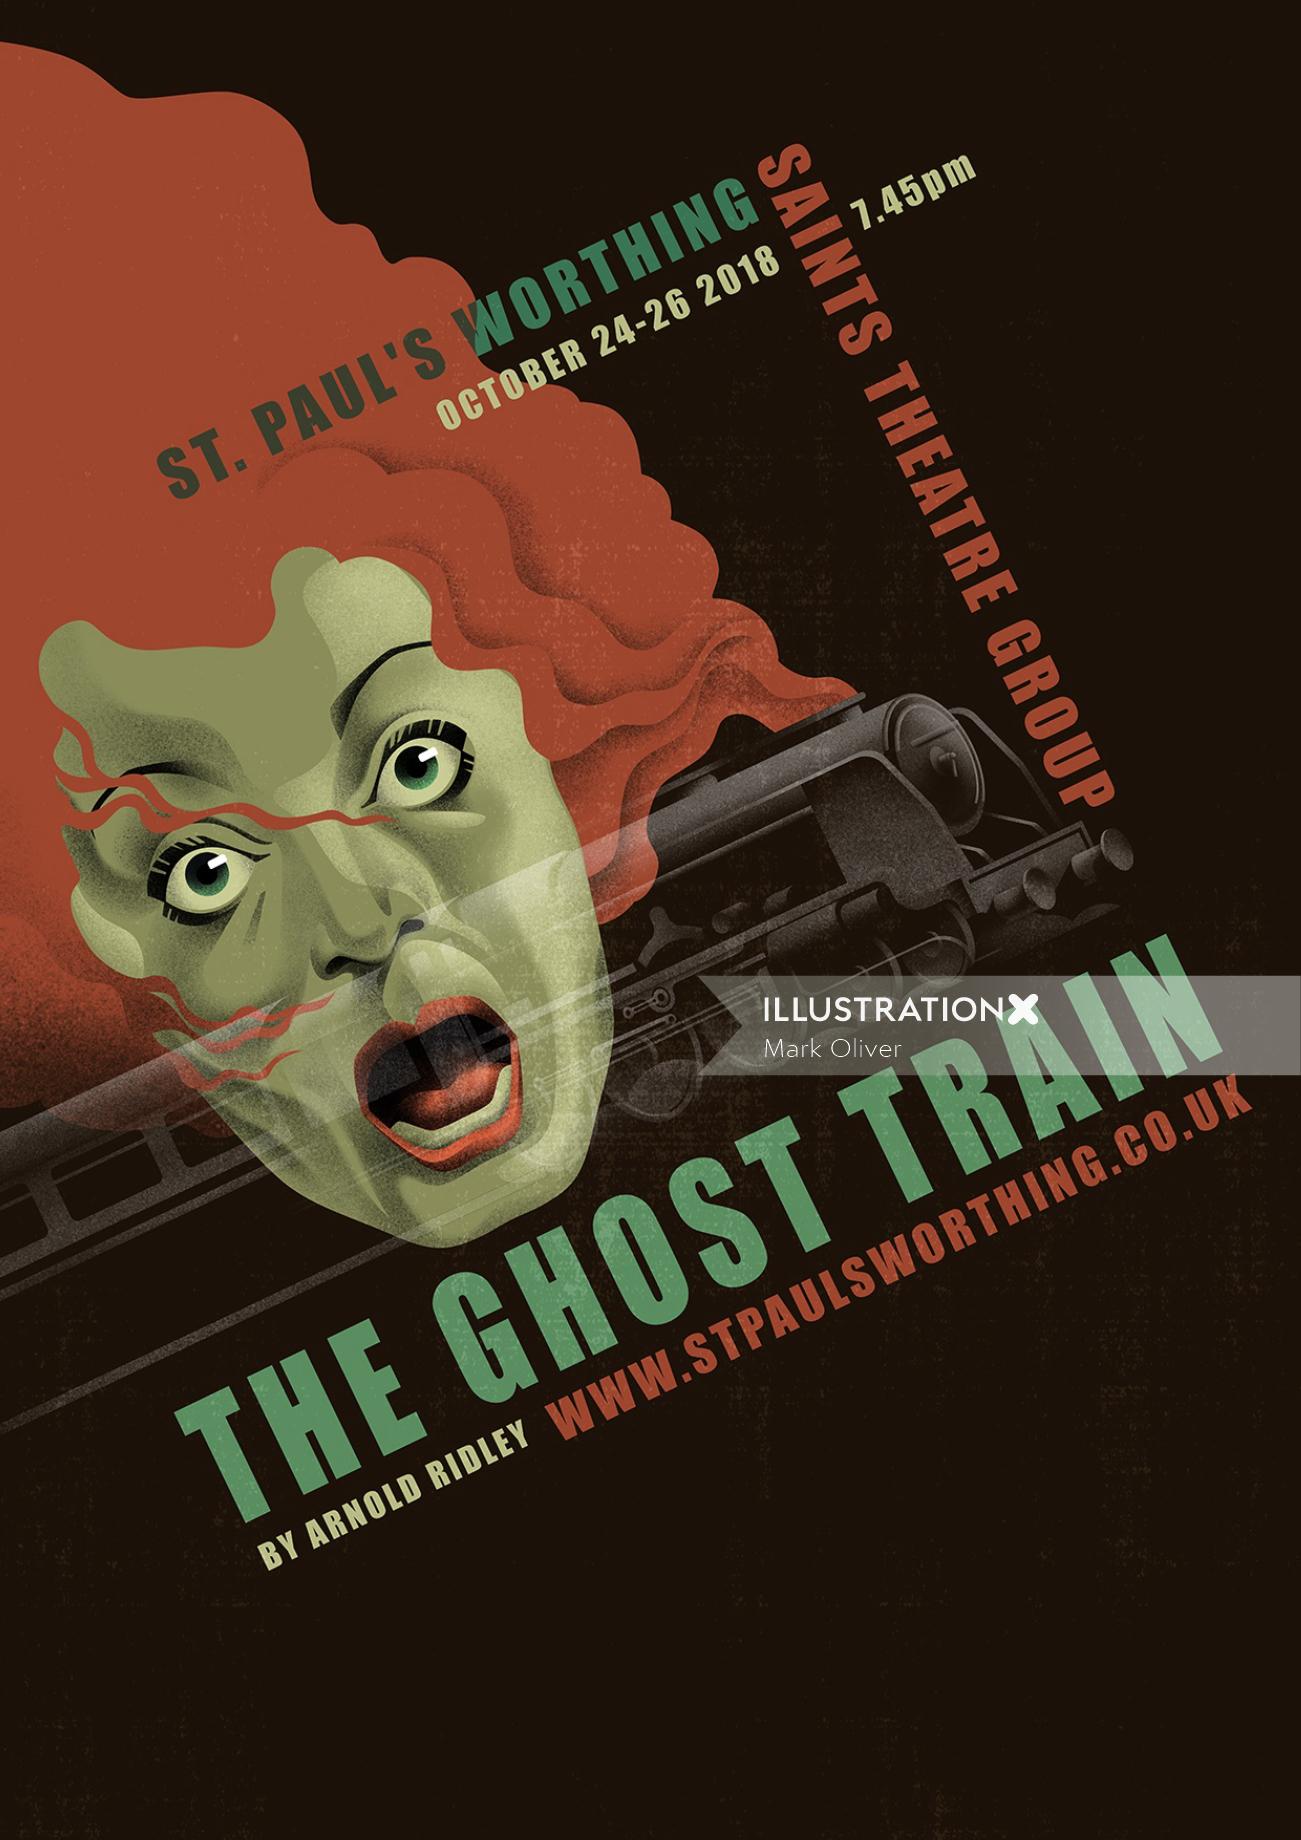 Arte del cartel para El tren fantasma